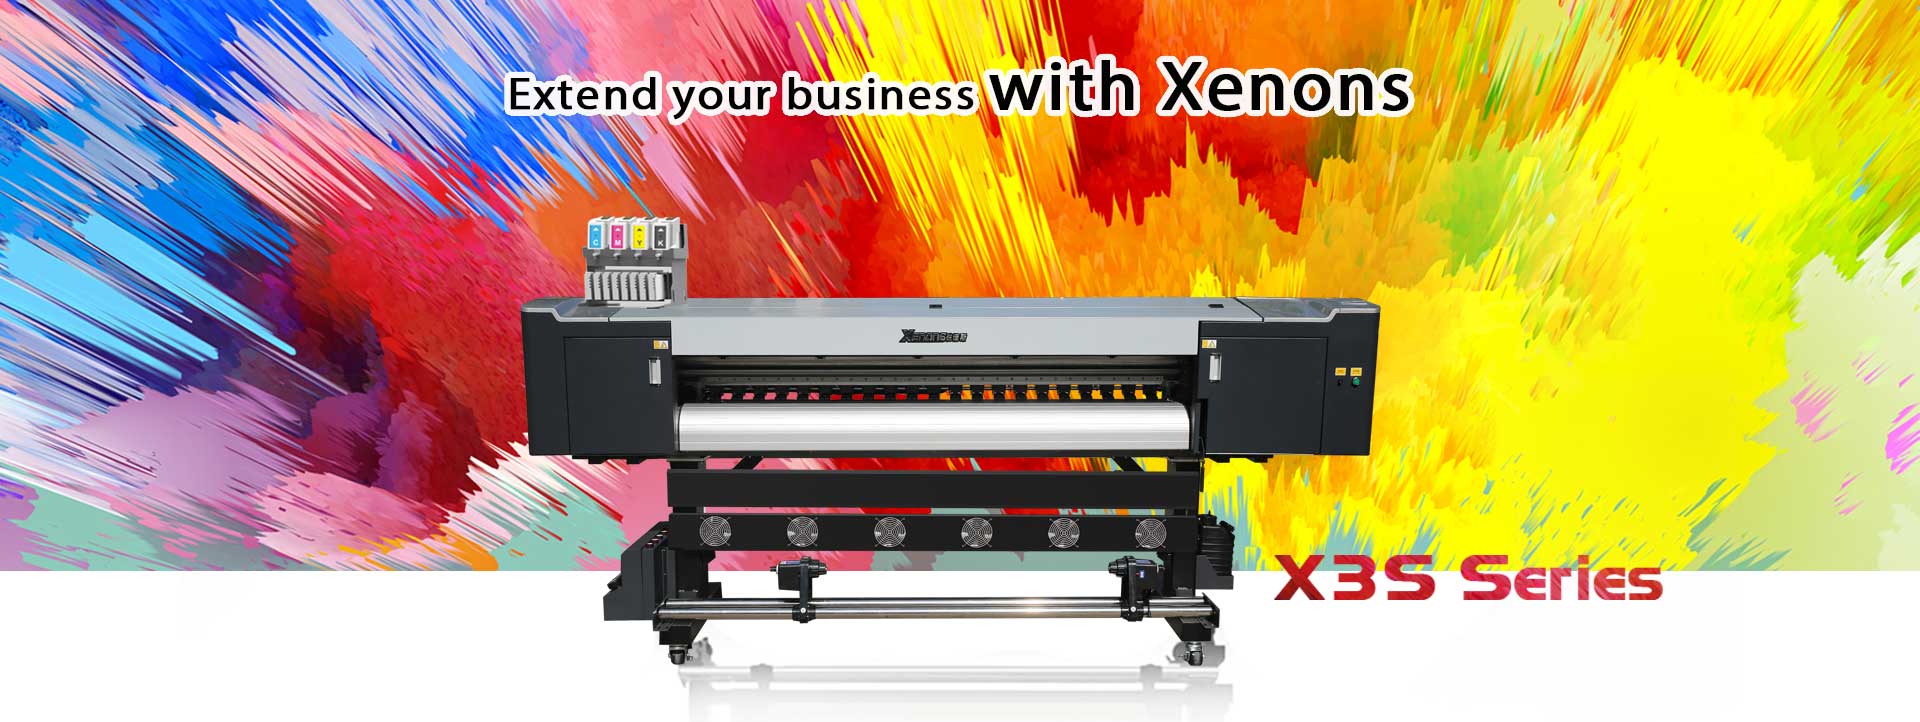 Xenons-X3S-Printer